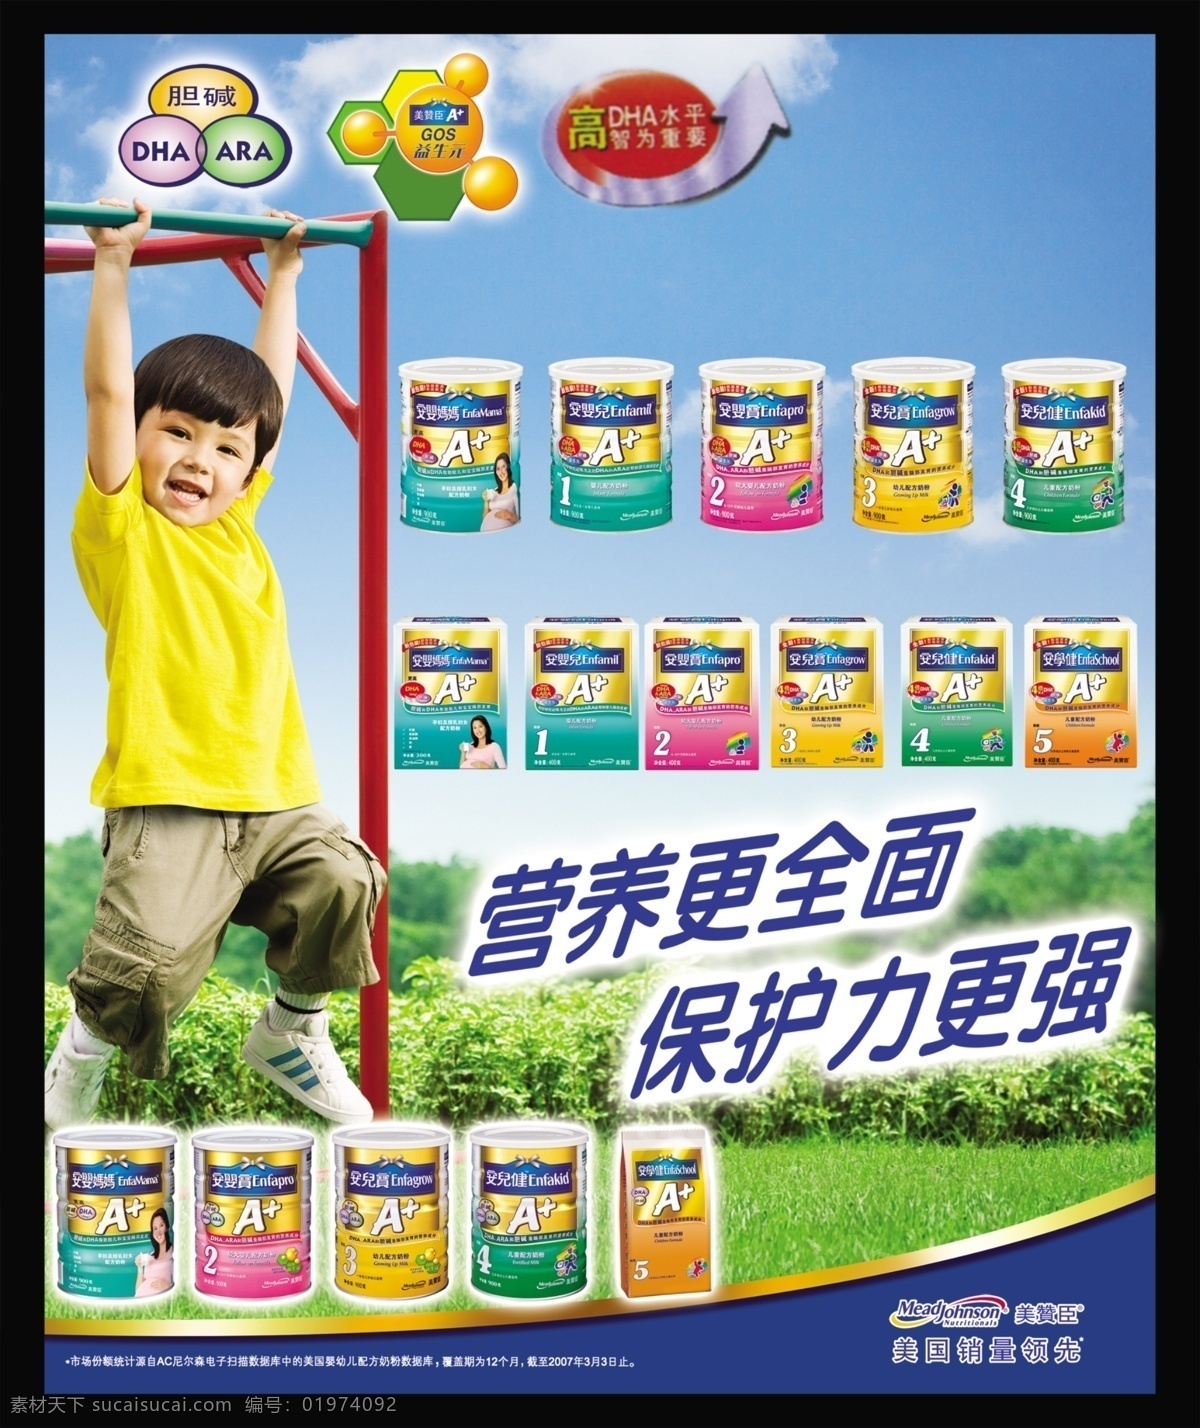 美赞成奶粉 美赞成 美 赞成 奶粉 广告 标志 营养更全面 保护力更强 儿童 树 广告设计模板 源文件